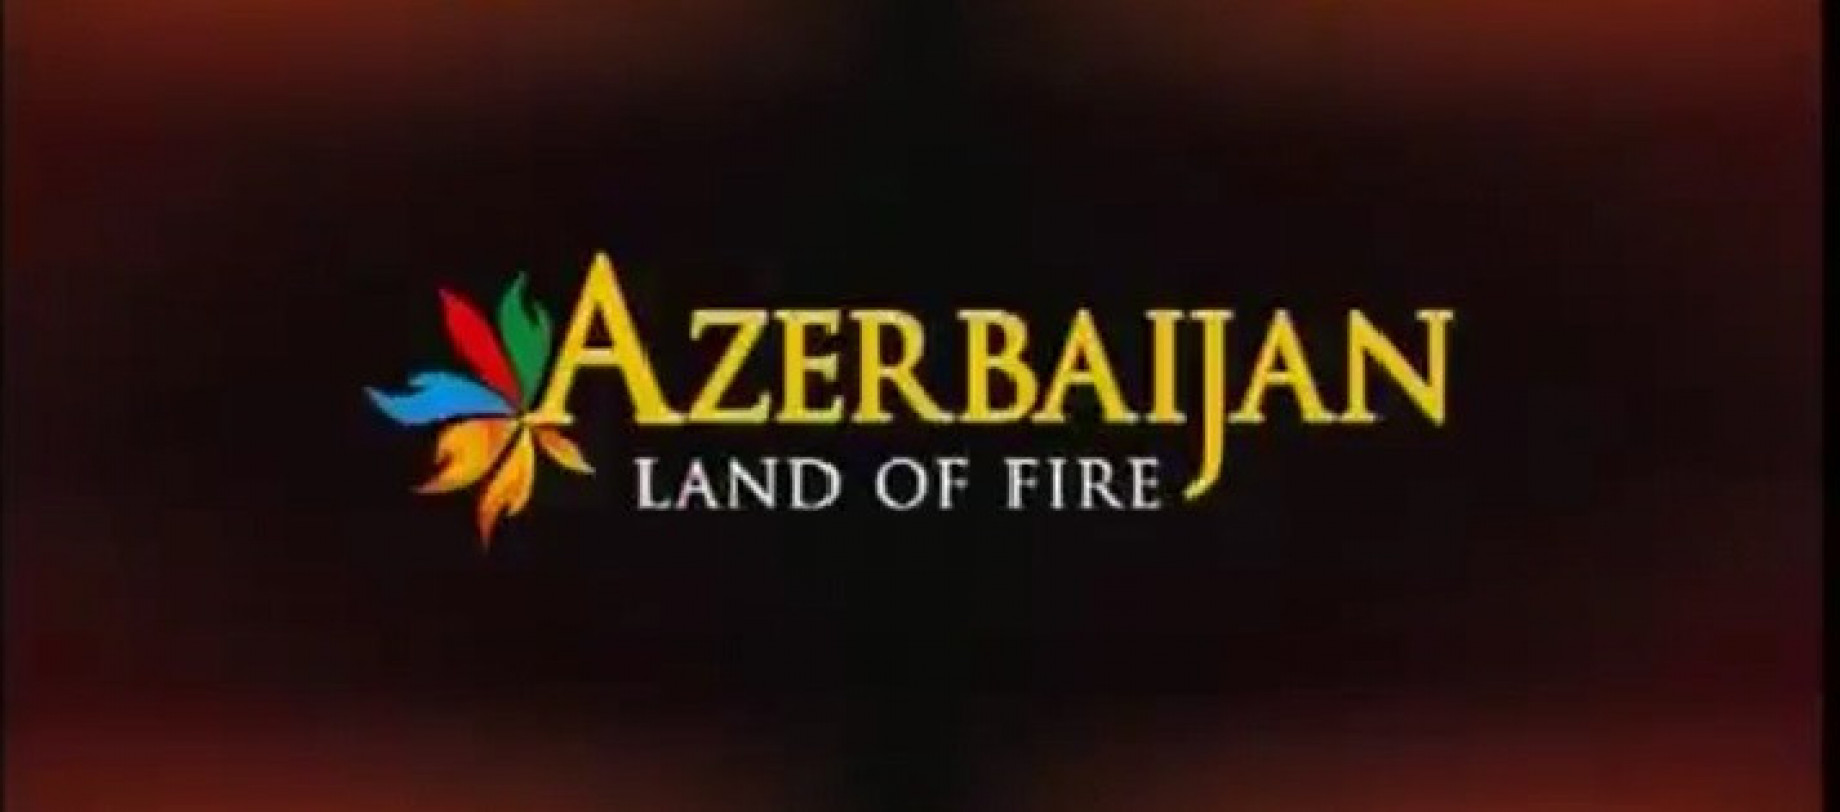 azerbaijan land of fire screen.jpg